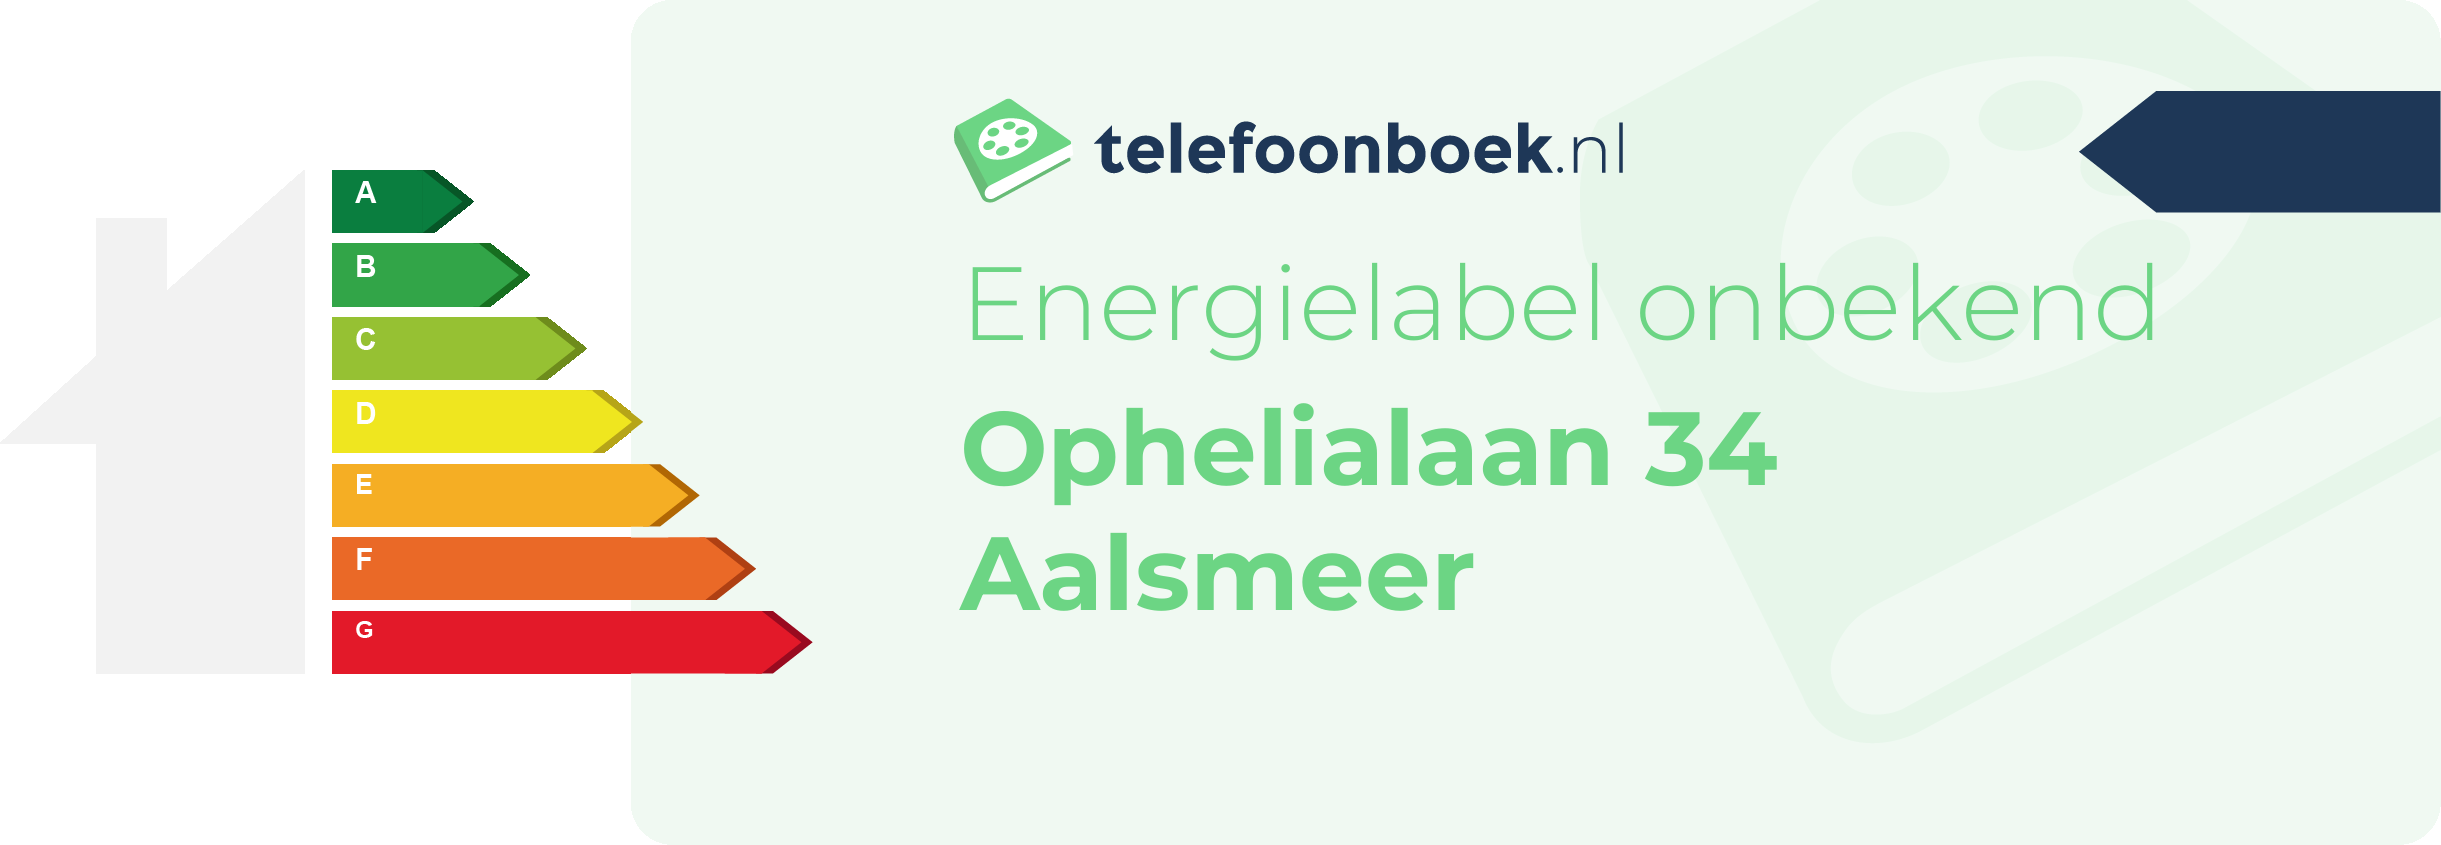 Energielabel Ophelialaan 34 Aalsmeer